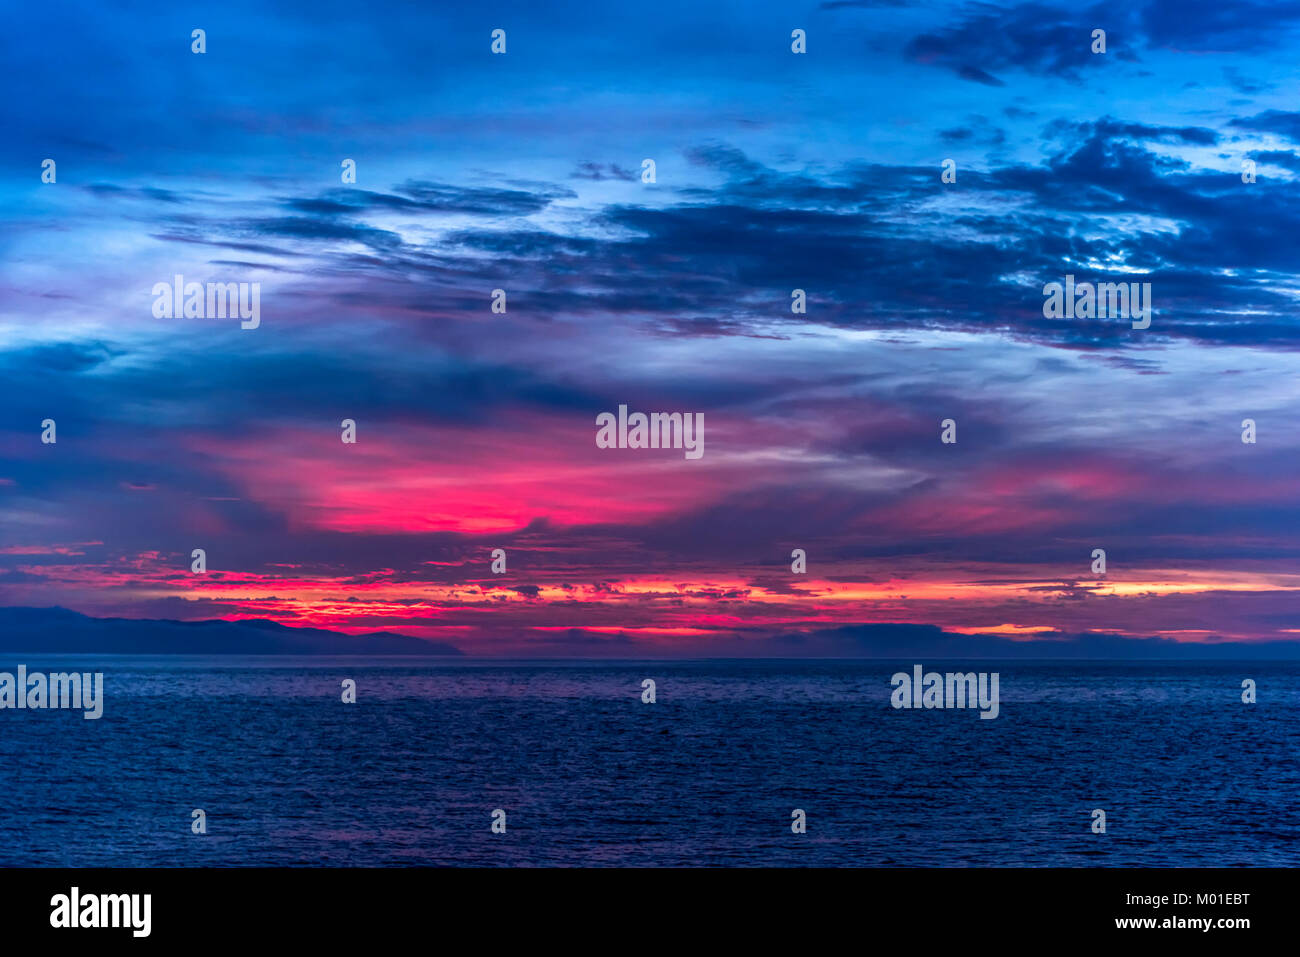 Un hermoso amanecer en las remotas islas del Canal de California muestra la vibrante y moody brillantemente iluminada por el sol rojo y naranja de las nubes. Foto de stock